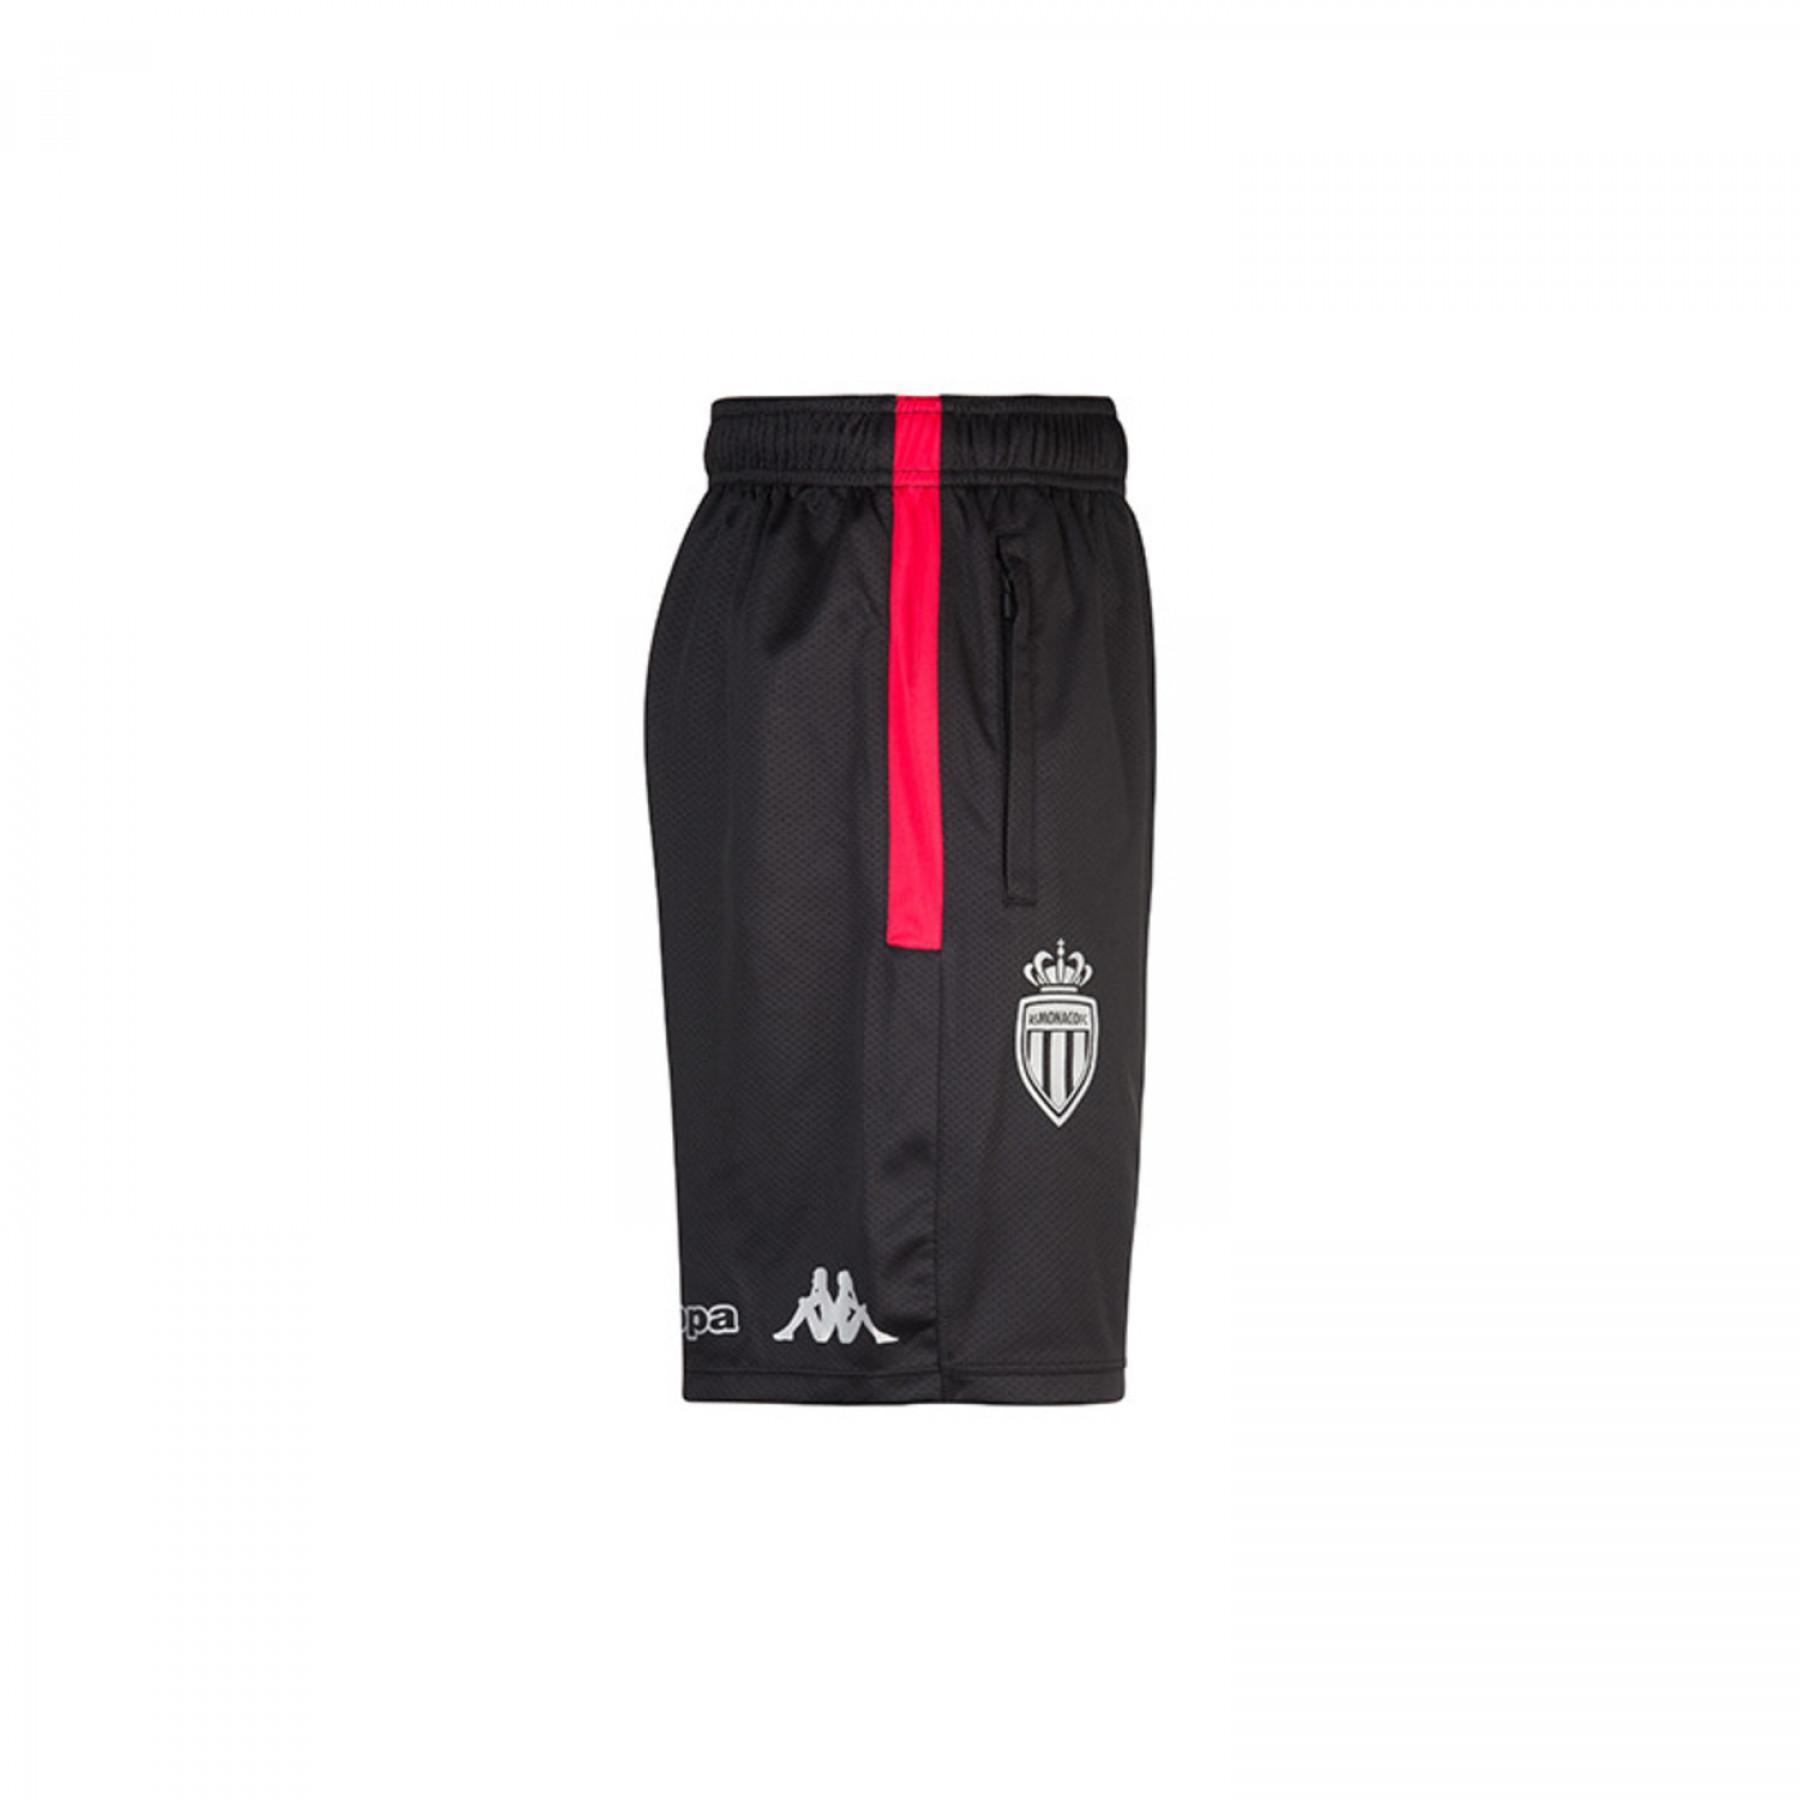 Kinder shorts ahorazip 3 AS Monaco